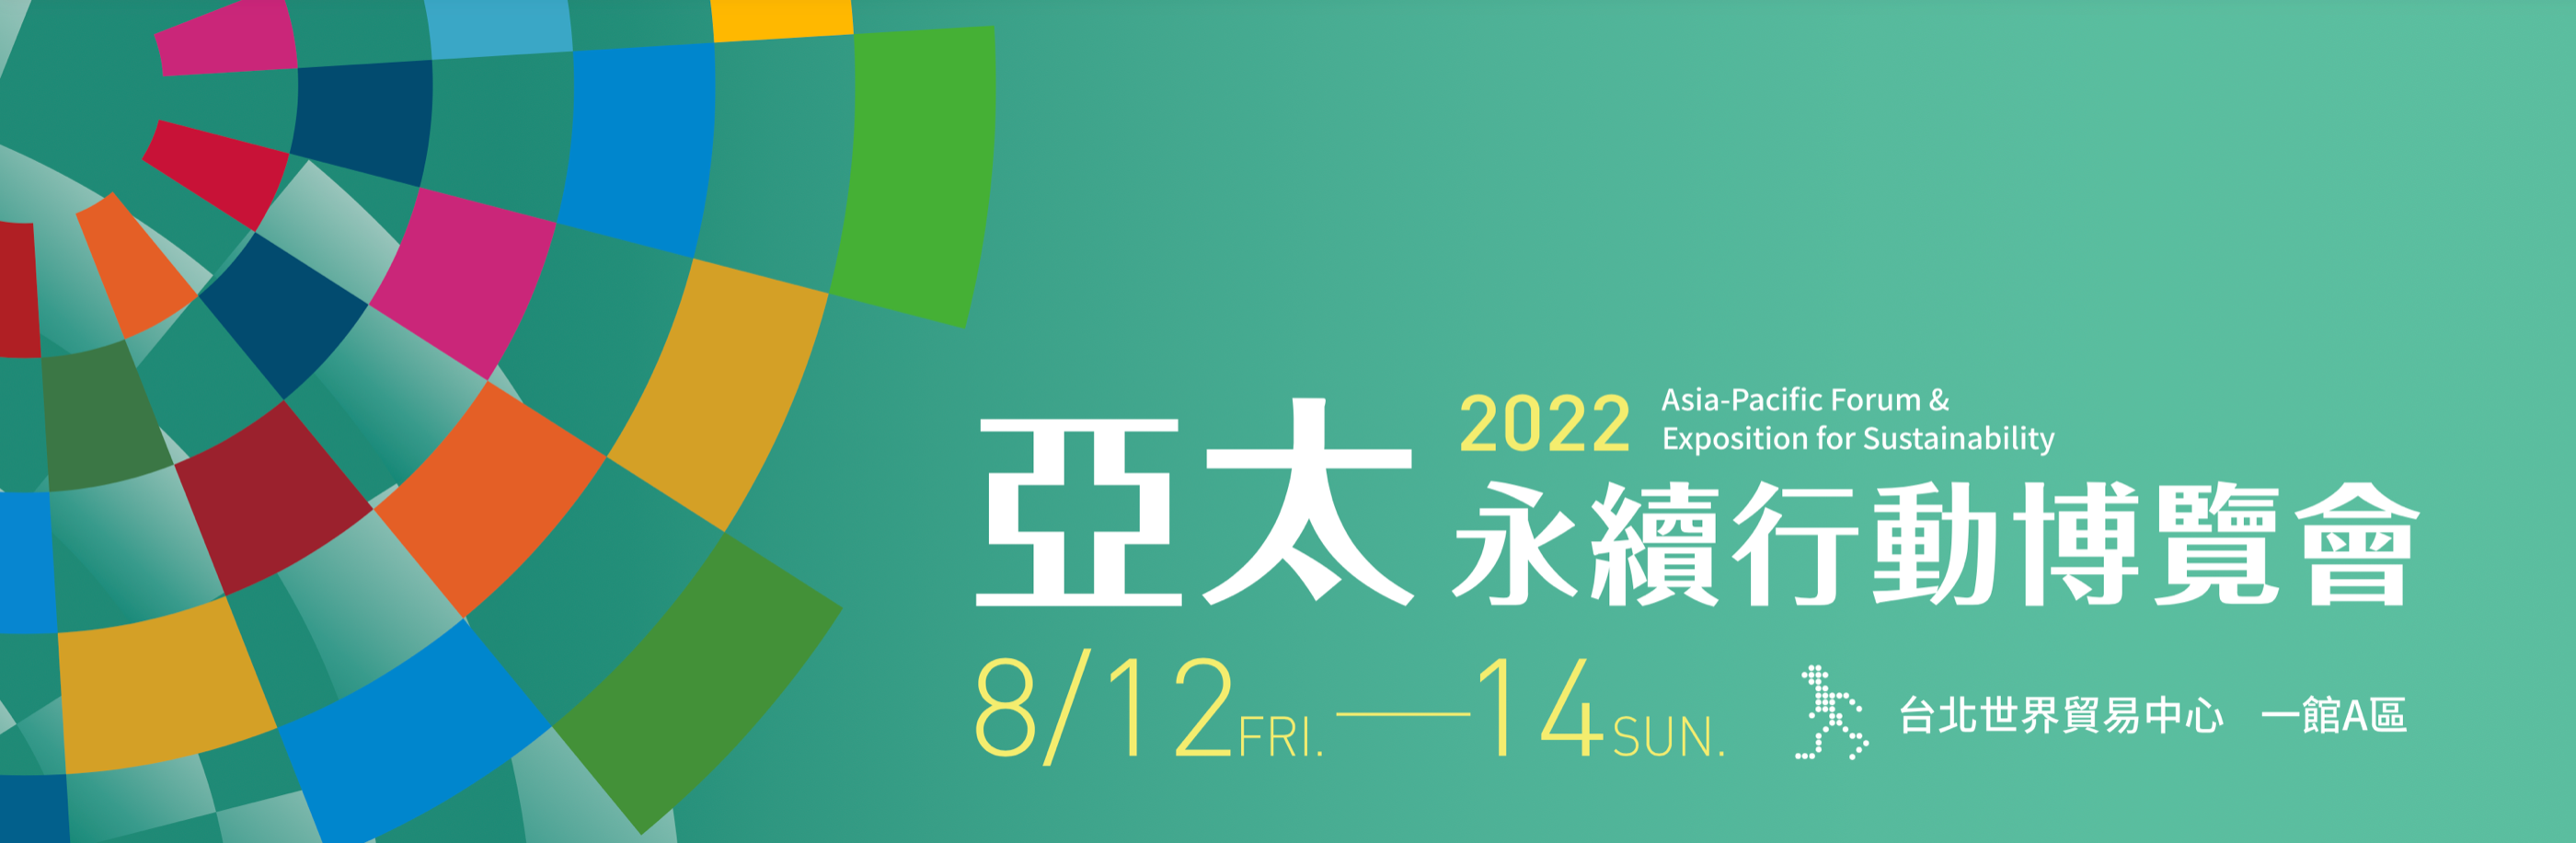 南寳樹脂將於8/12~8/14參與2022亞太永續行動博覽會